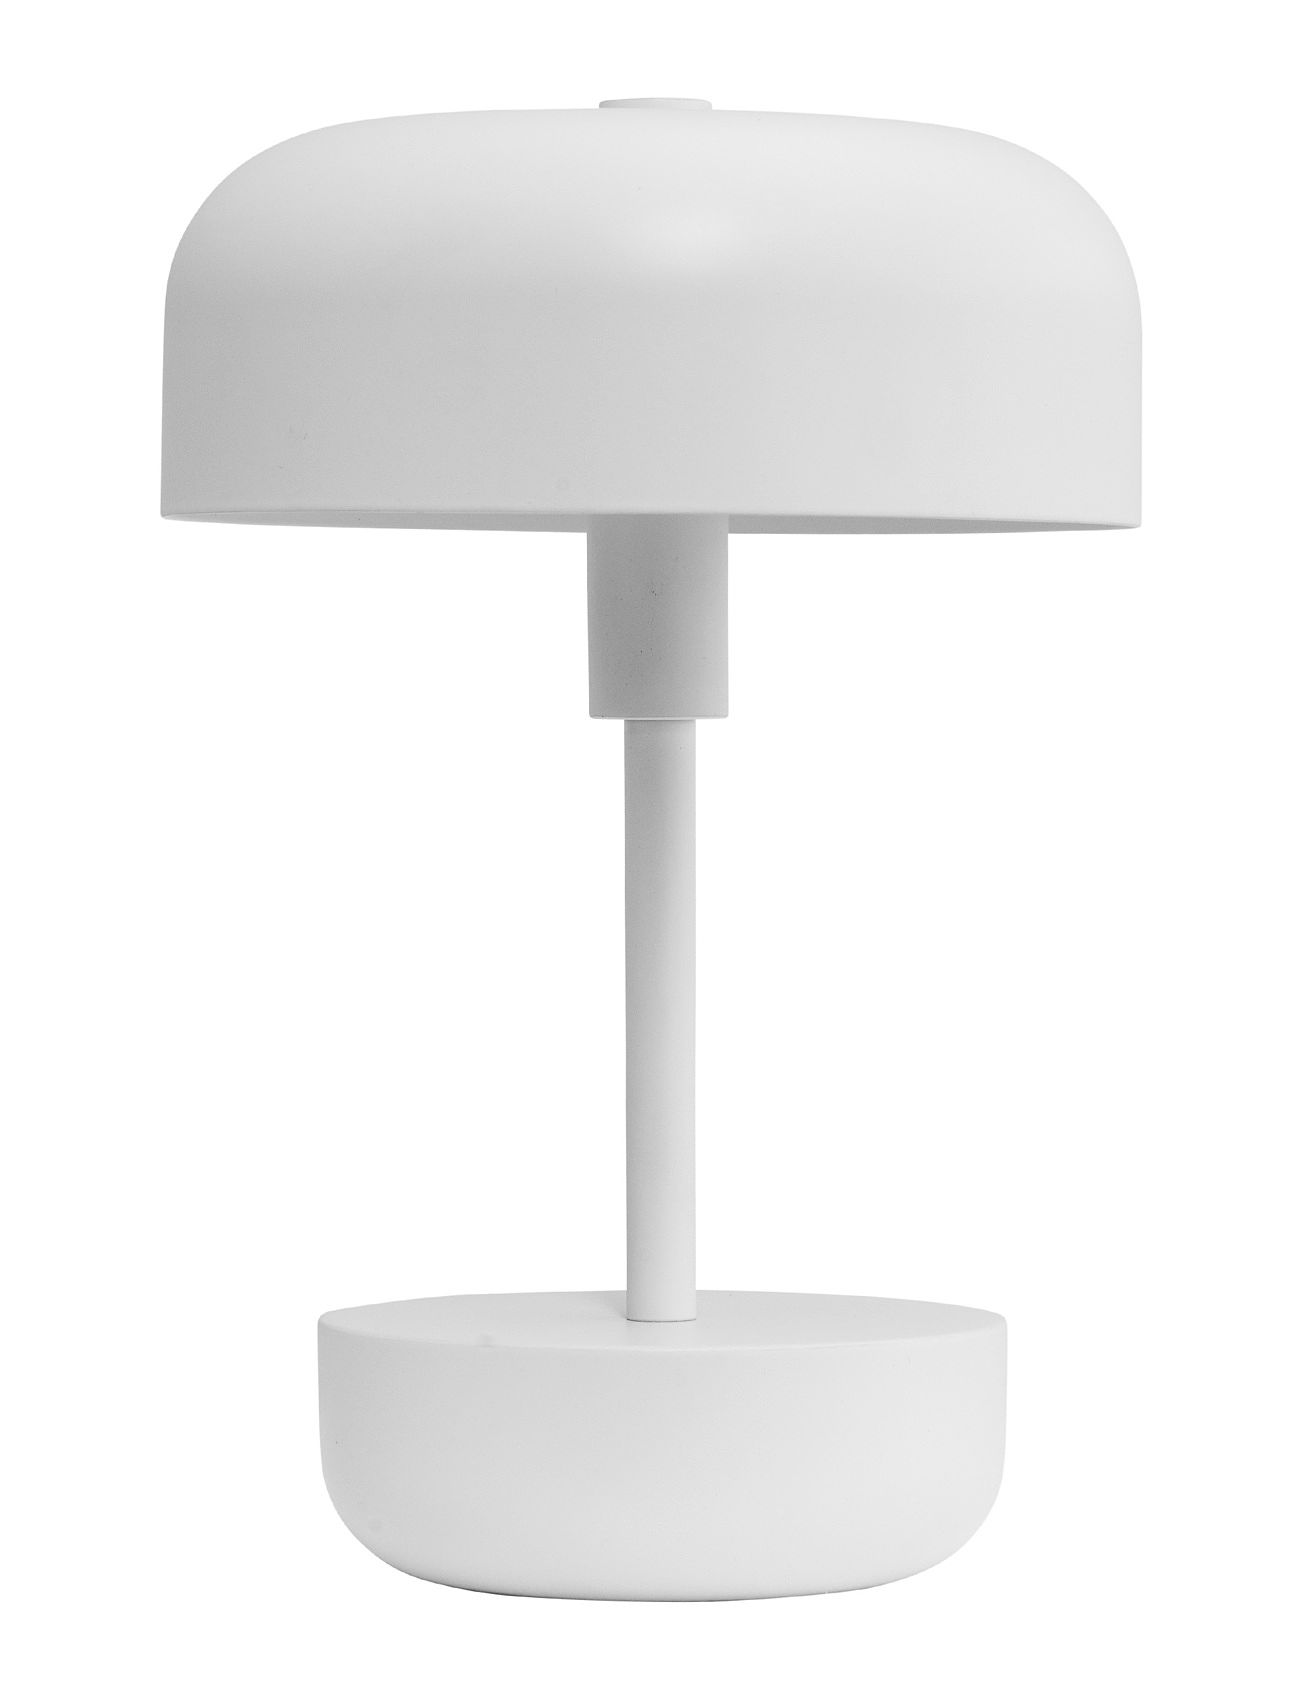 Haipot Hvid Led Genopladelig Bordlampe Home Lighting Lamps Table Lamps White Dyberg Larsen